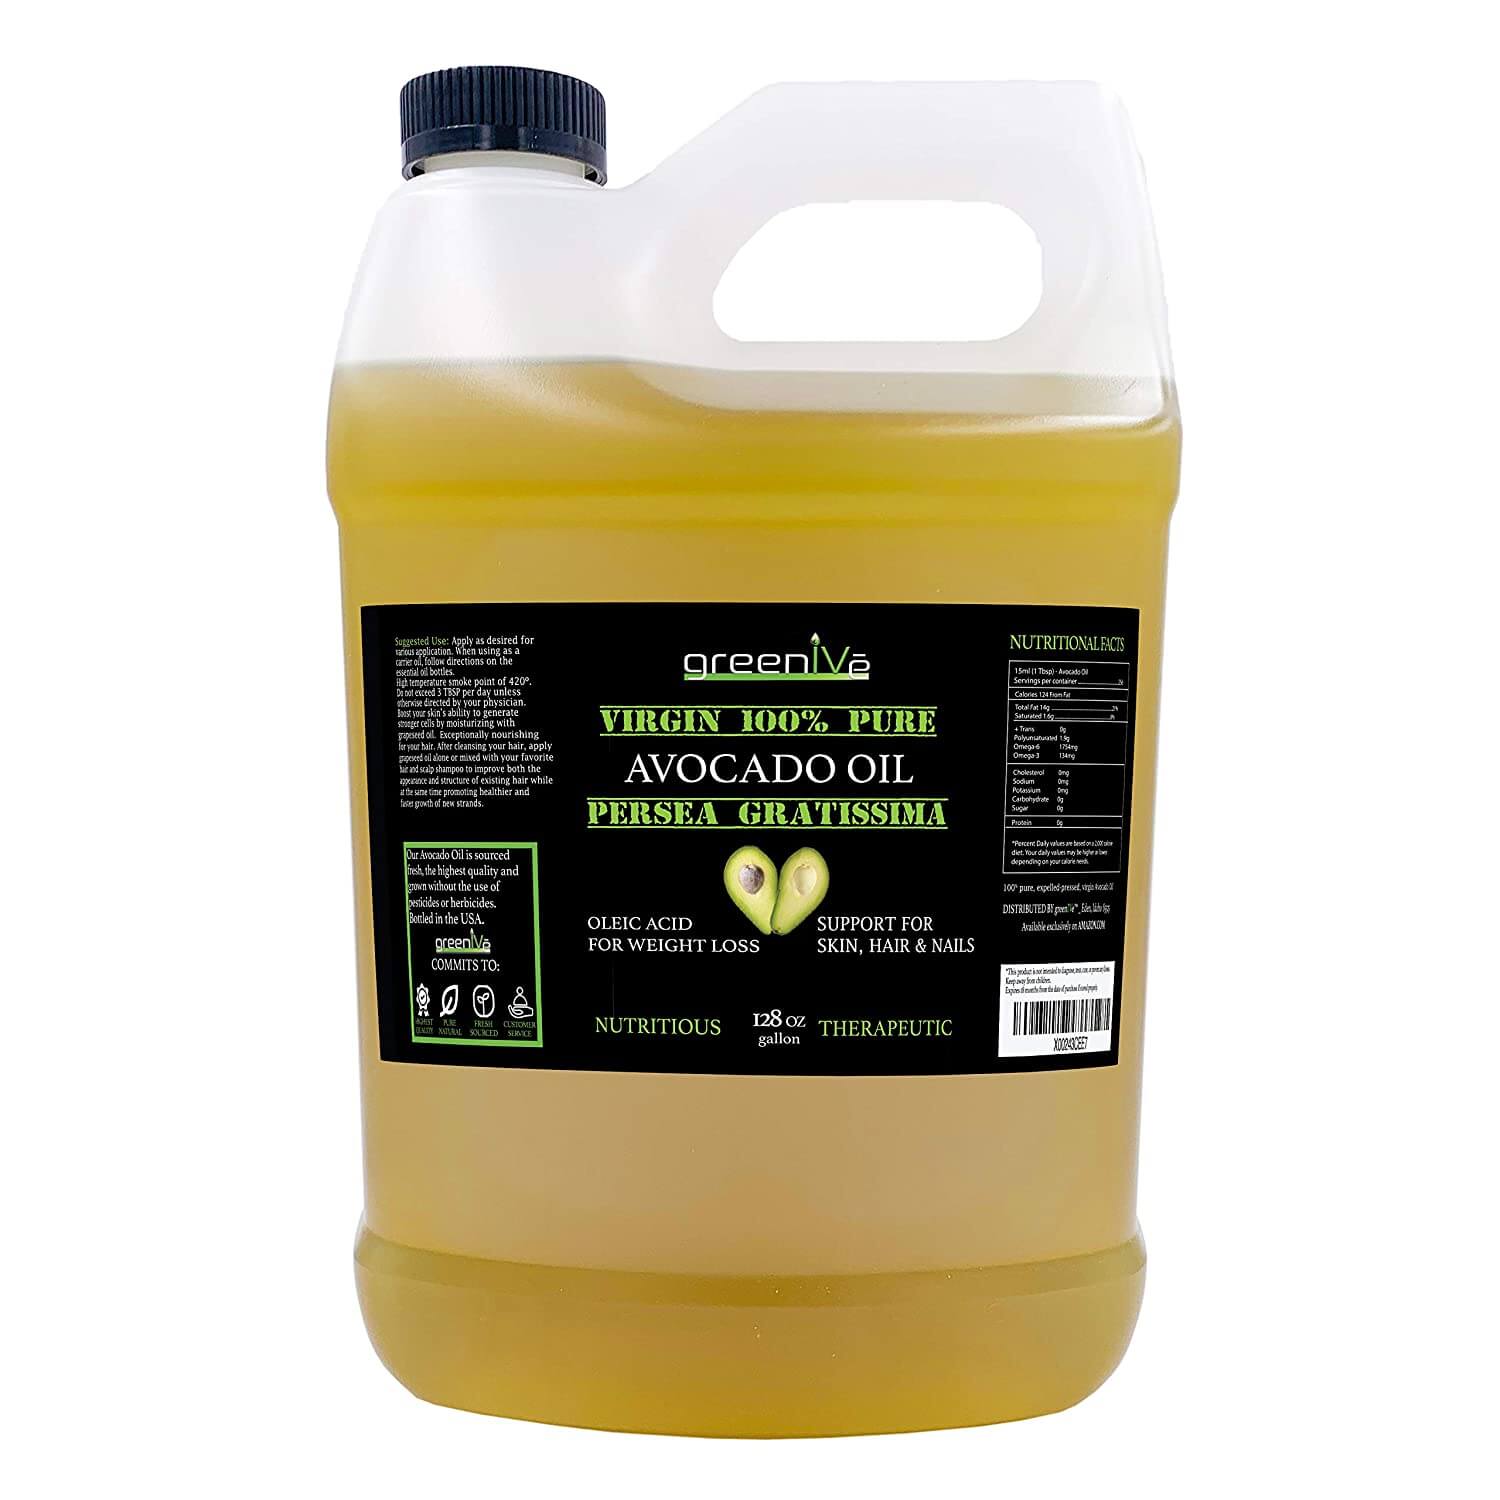 GreenIVe Avocado Oil